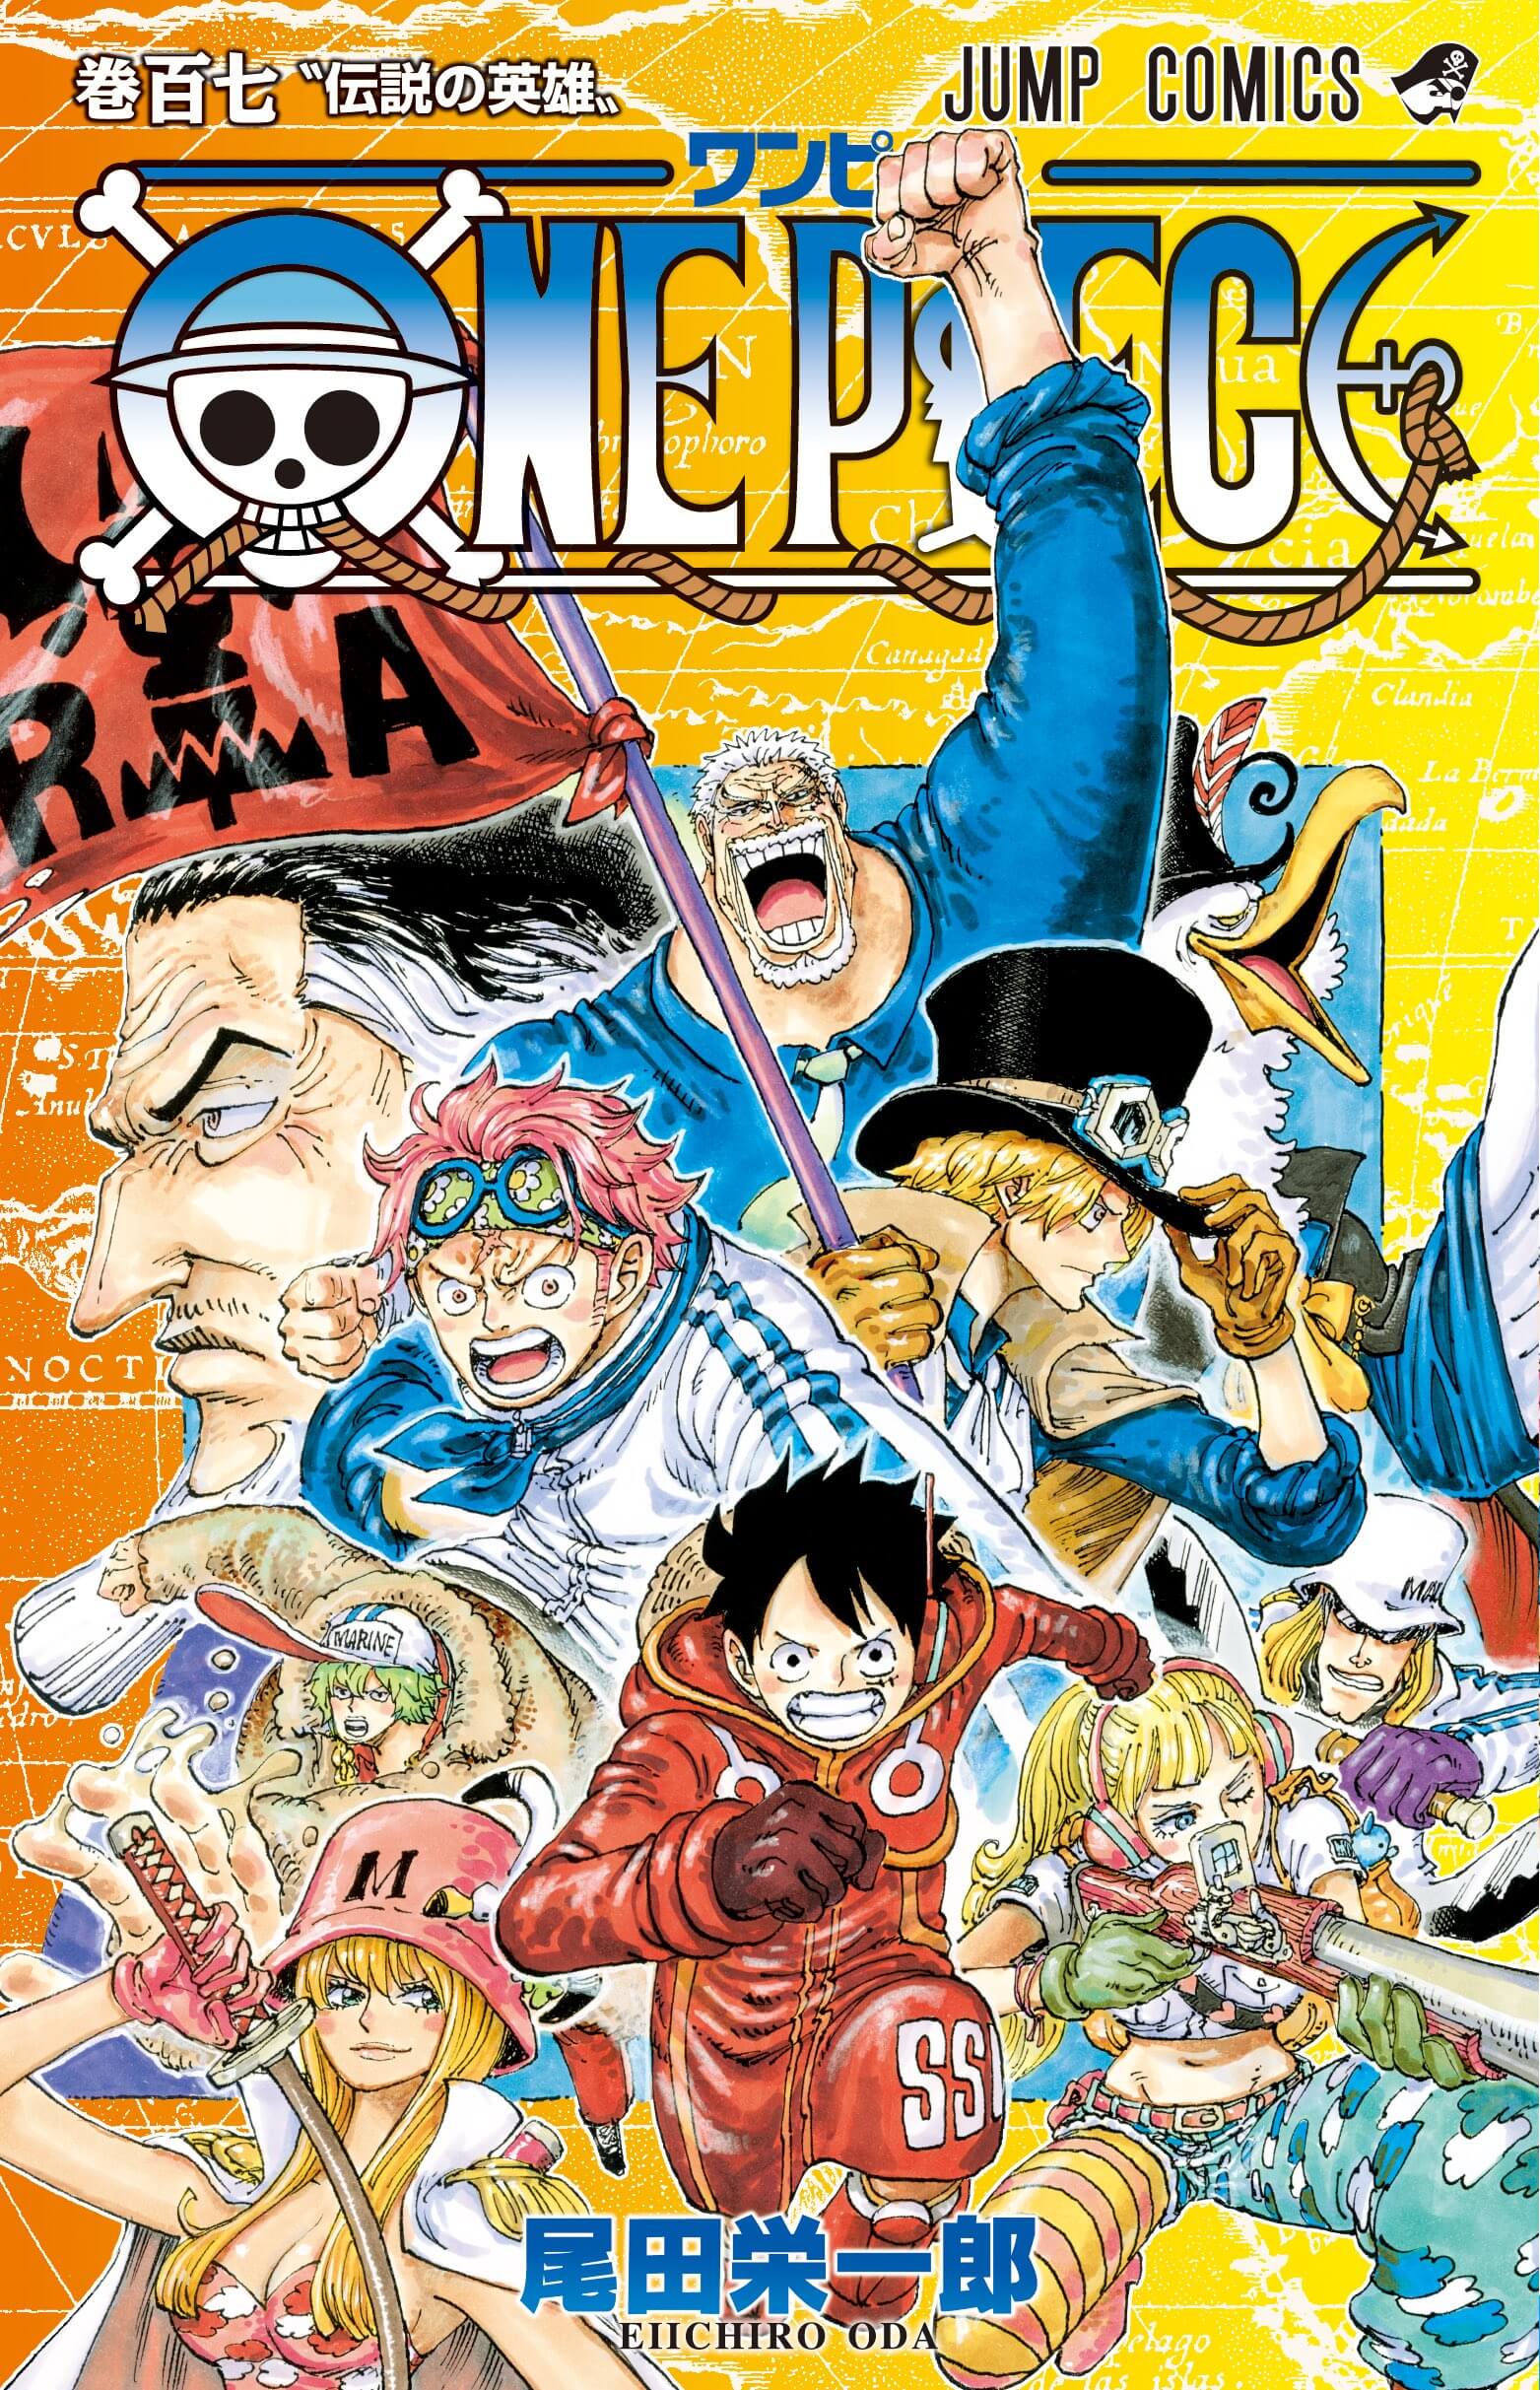 A equipe responsável por One Piece, do criador Eiichiro Oda, revelou que está programando uma nova transmissão ao vivo para o canal oficial do anime no YouTube.